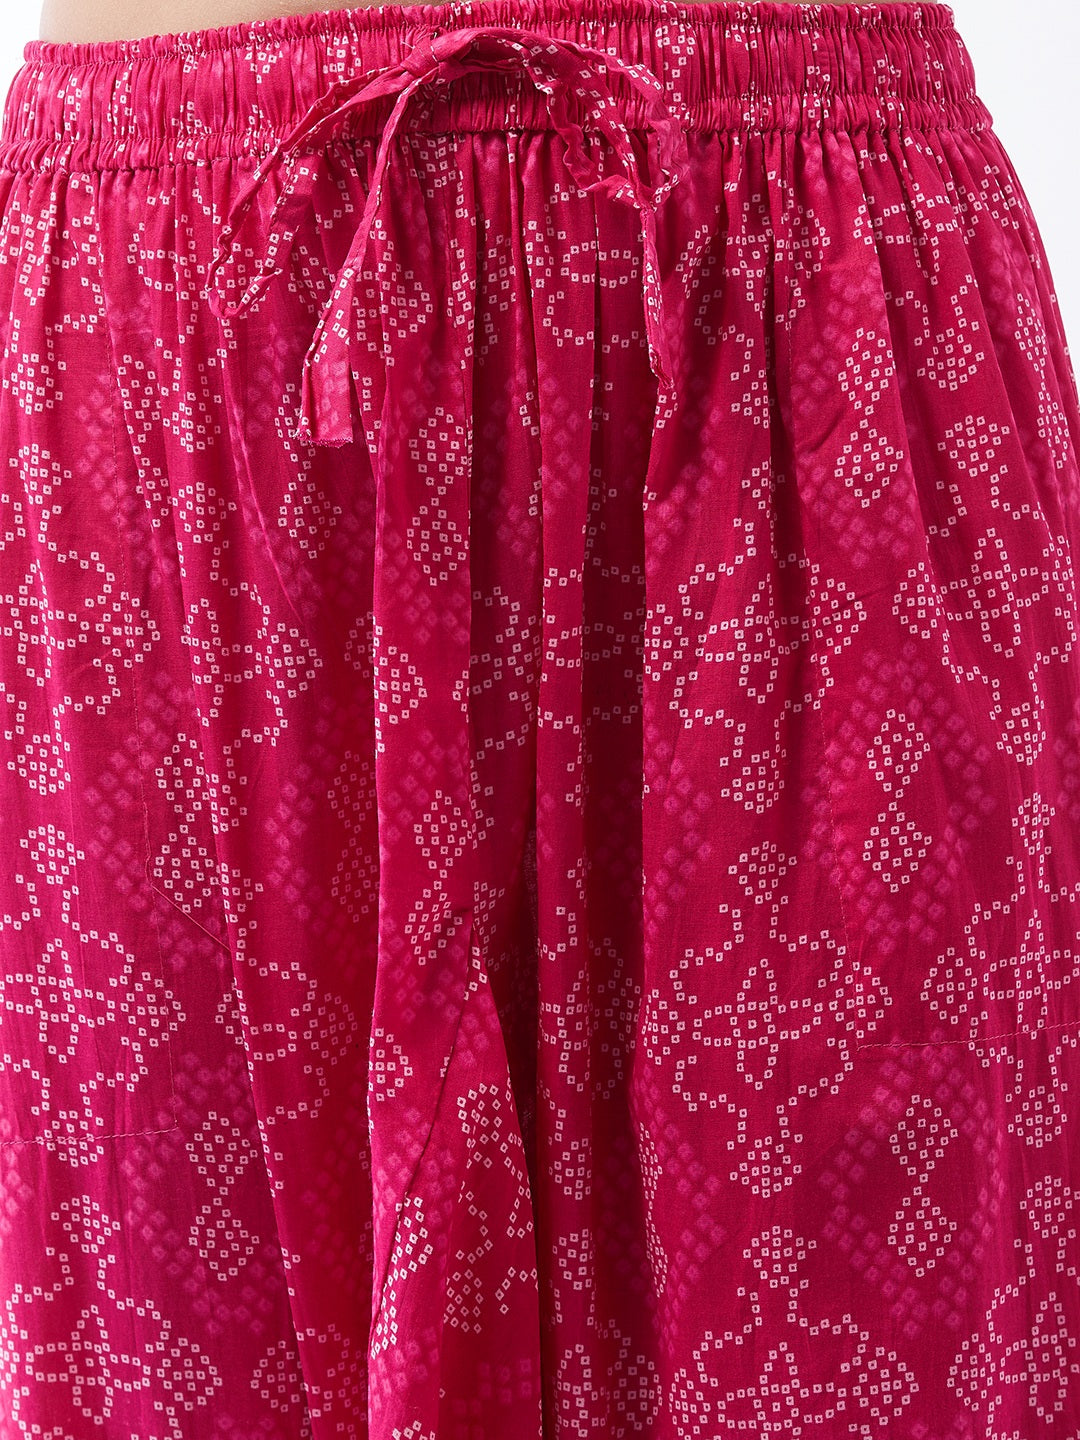 Pink Bandhini Harem Pants For Teens